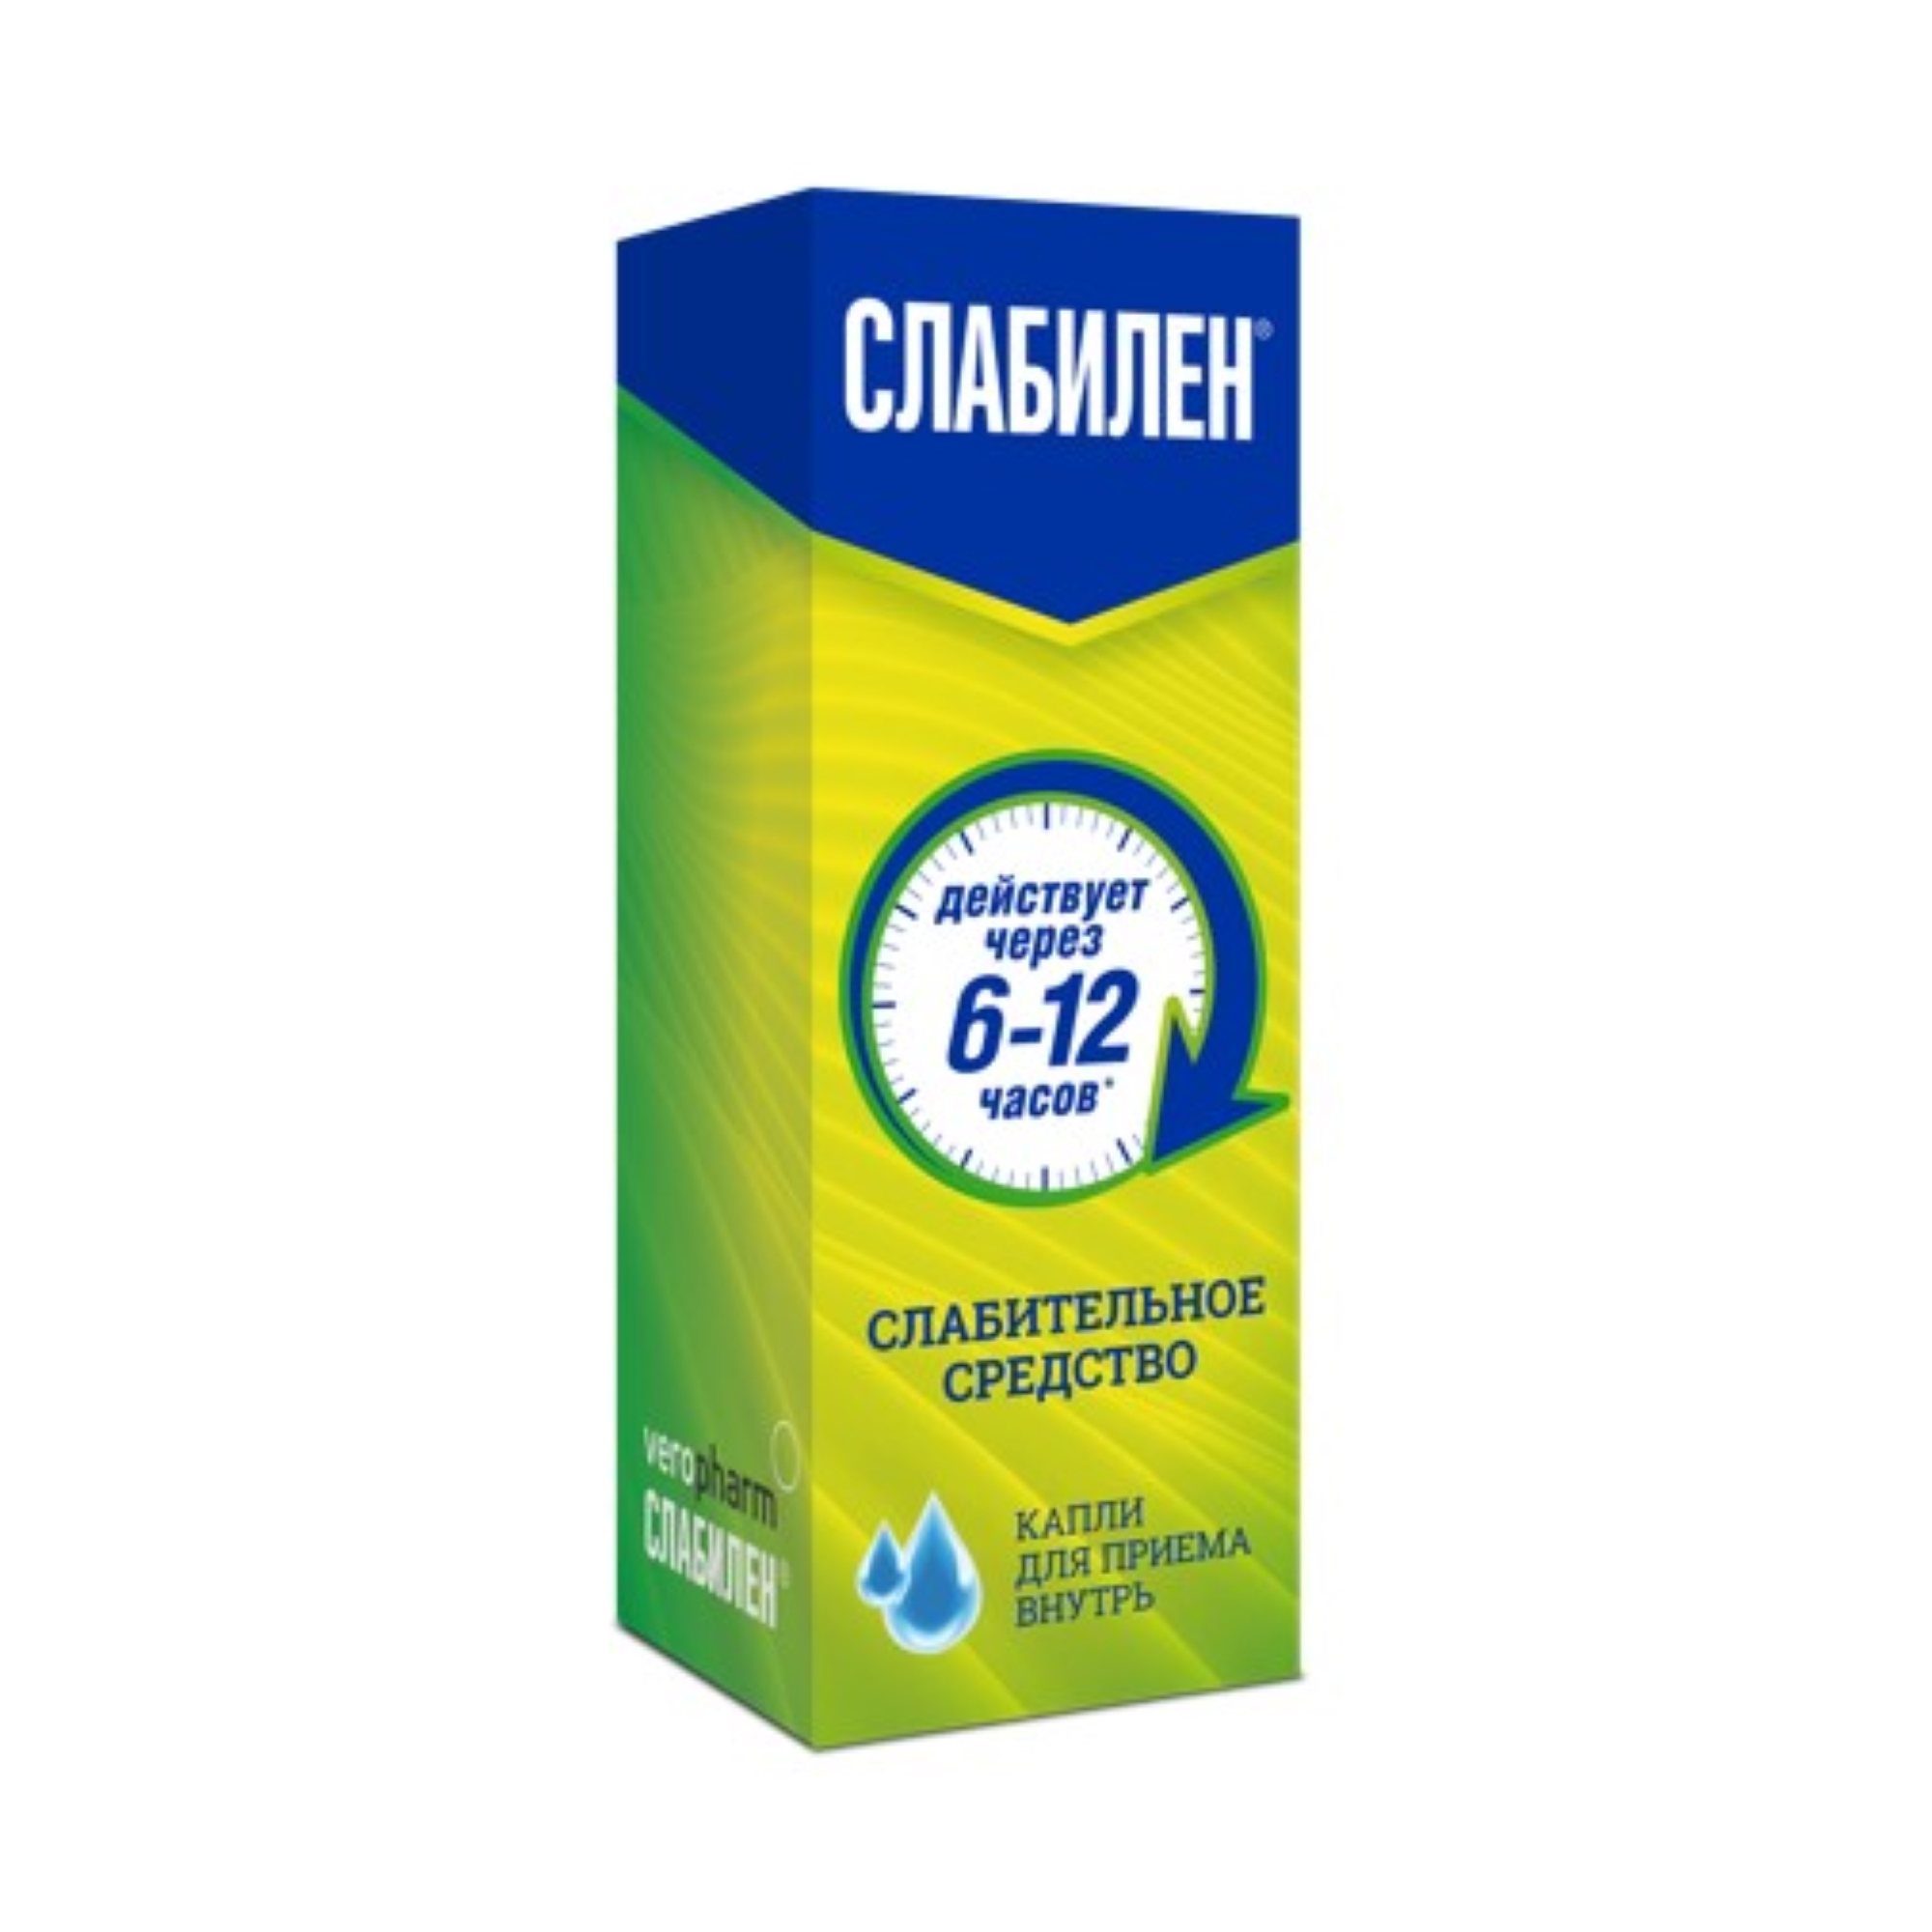 Слабилен капли для приема внутрь 7,5мг/мл 15мл - купить лекарство в Москве с экспресс доставкой на дом, официальная инструкция по применению